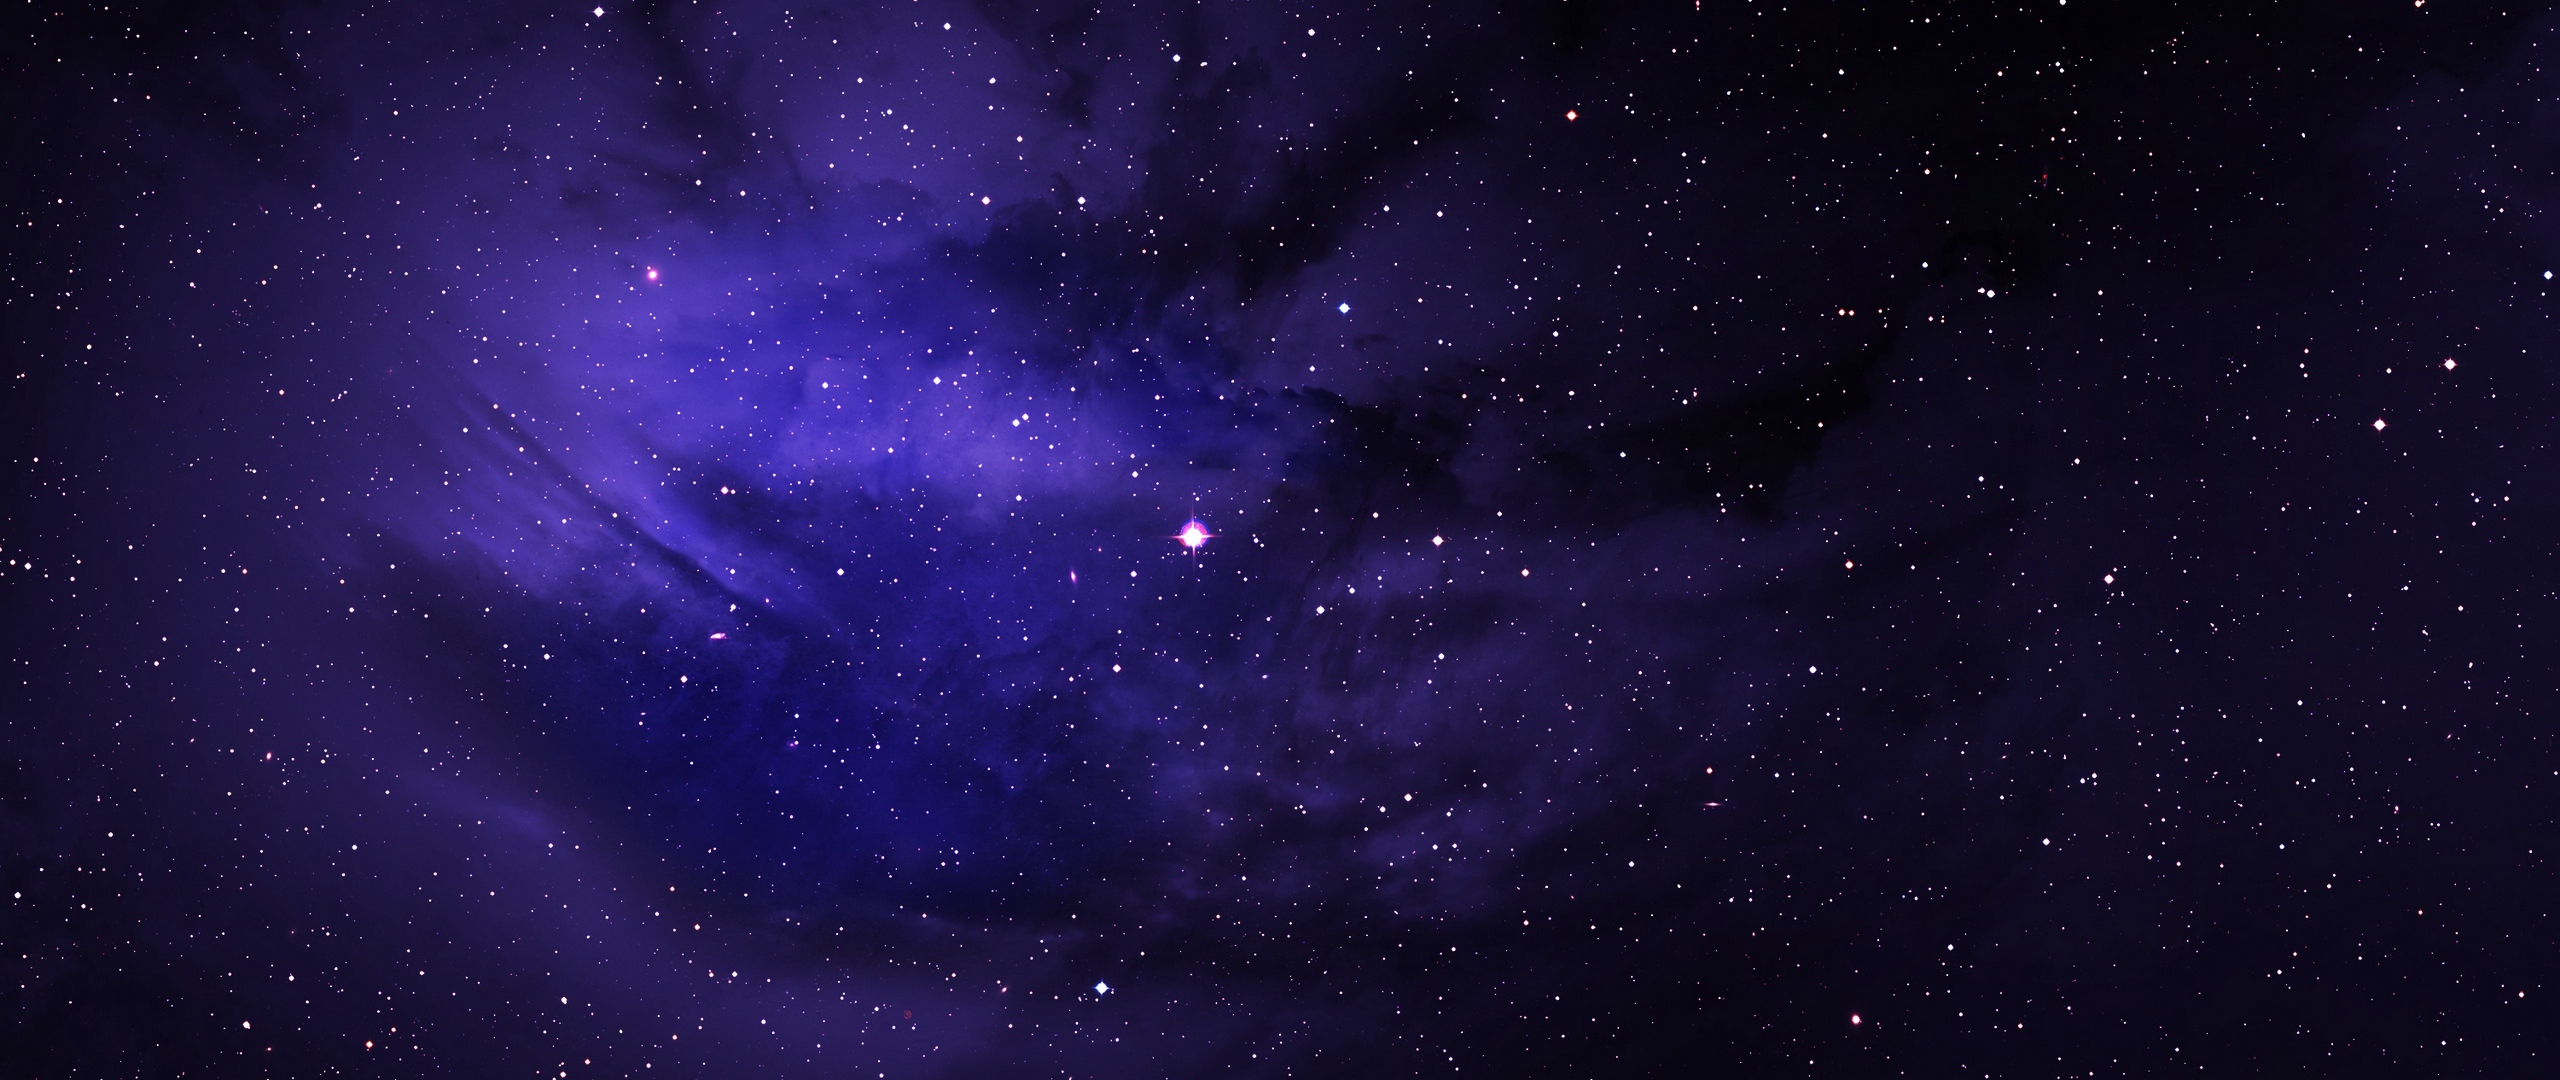 Wallpaper Stars, Space, Galaxy - Galaxy Stars 1080p - HD Wallpaper 